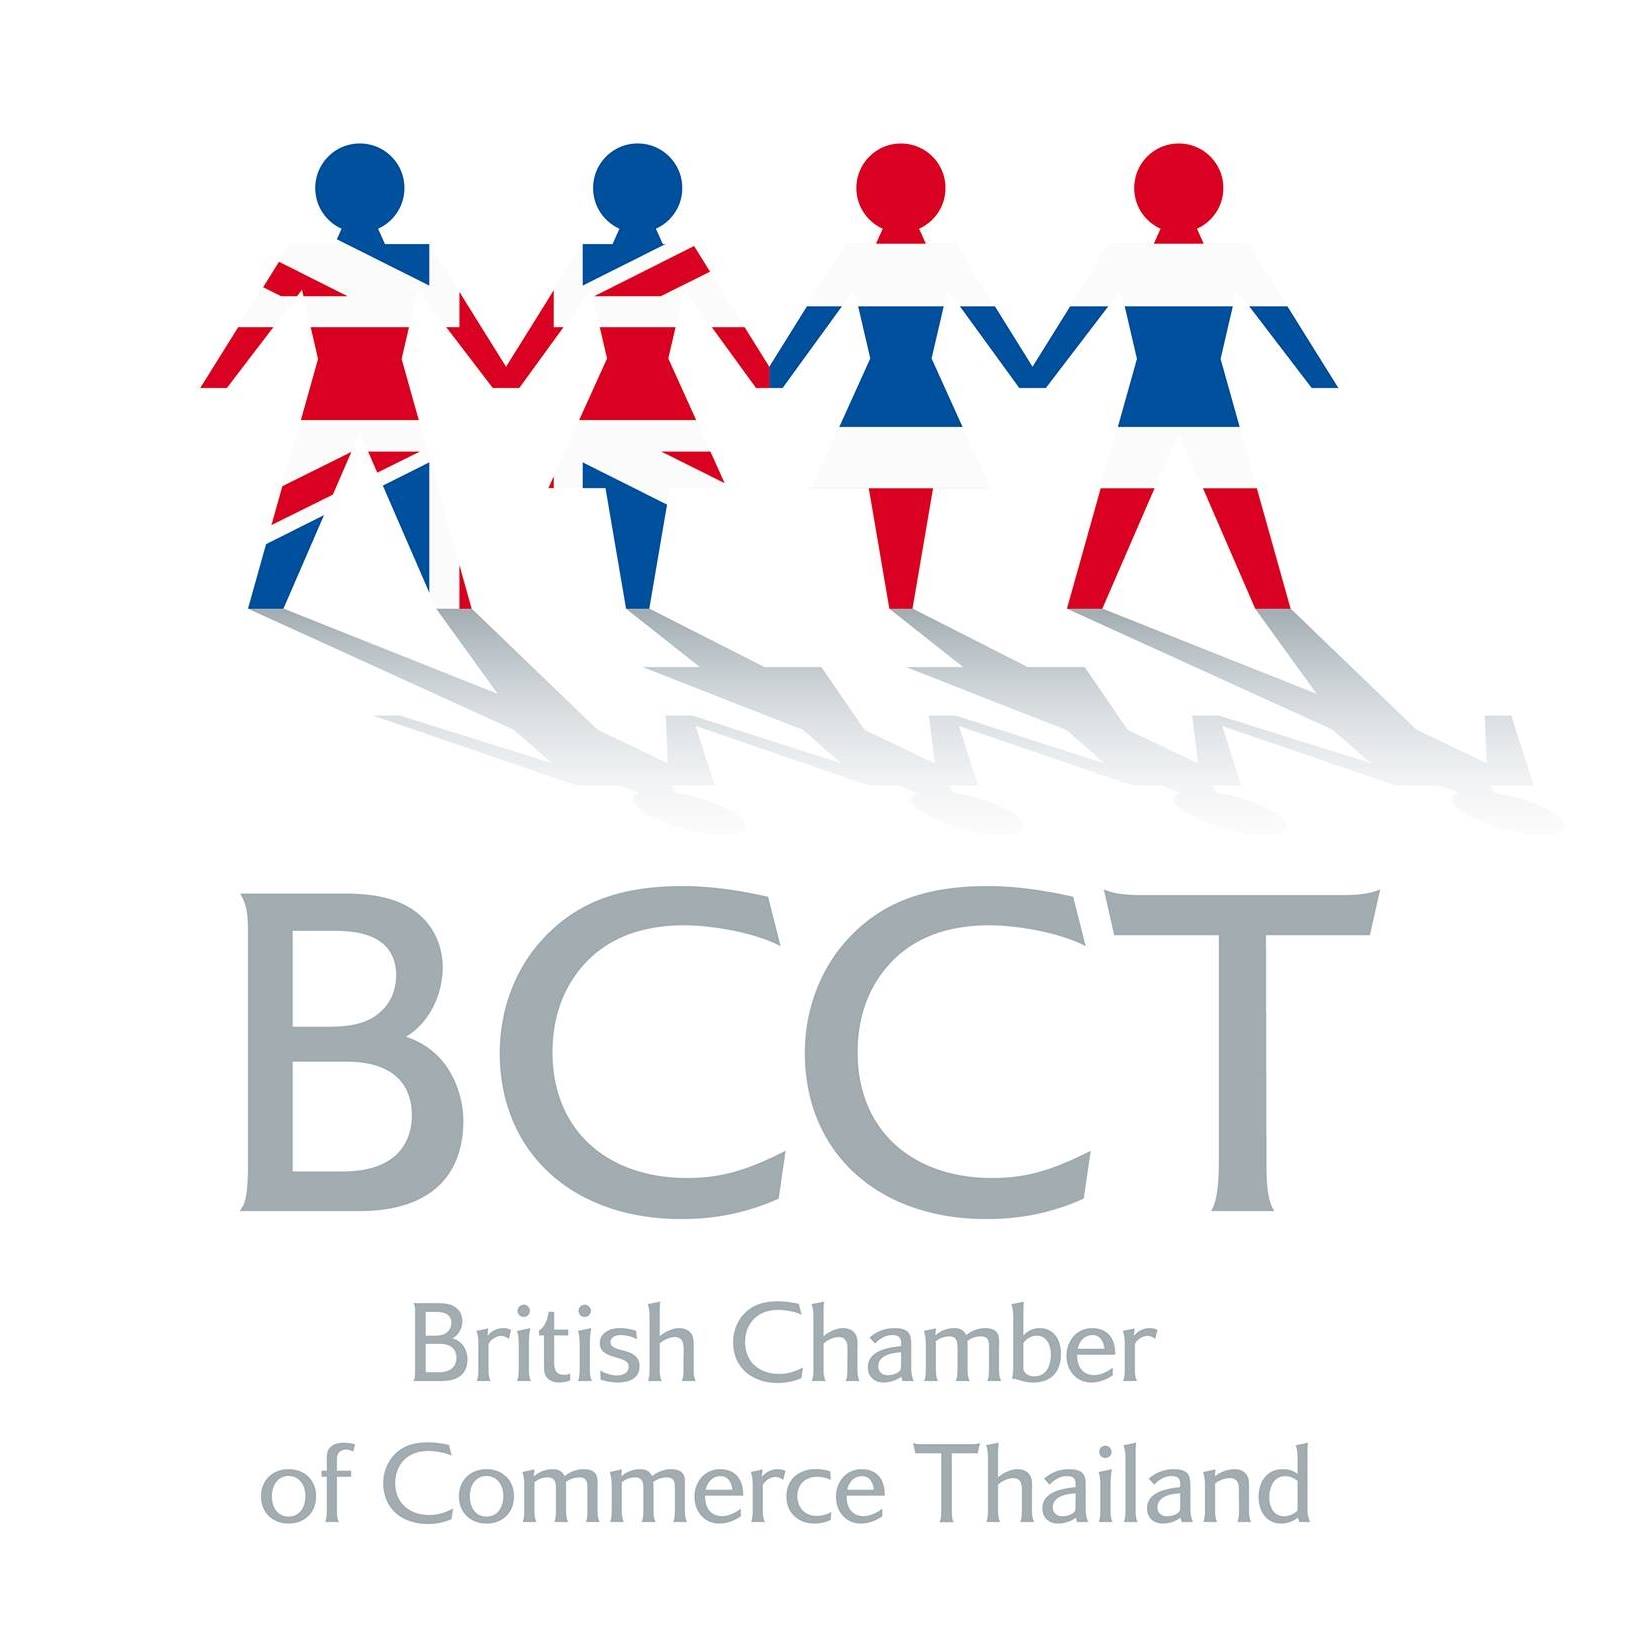 British Chamber of Commerce Thailand